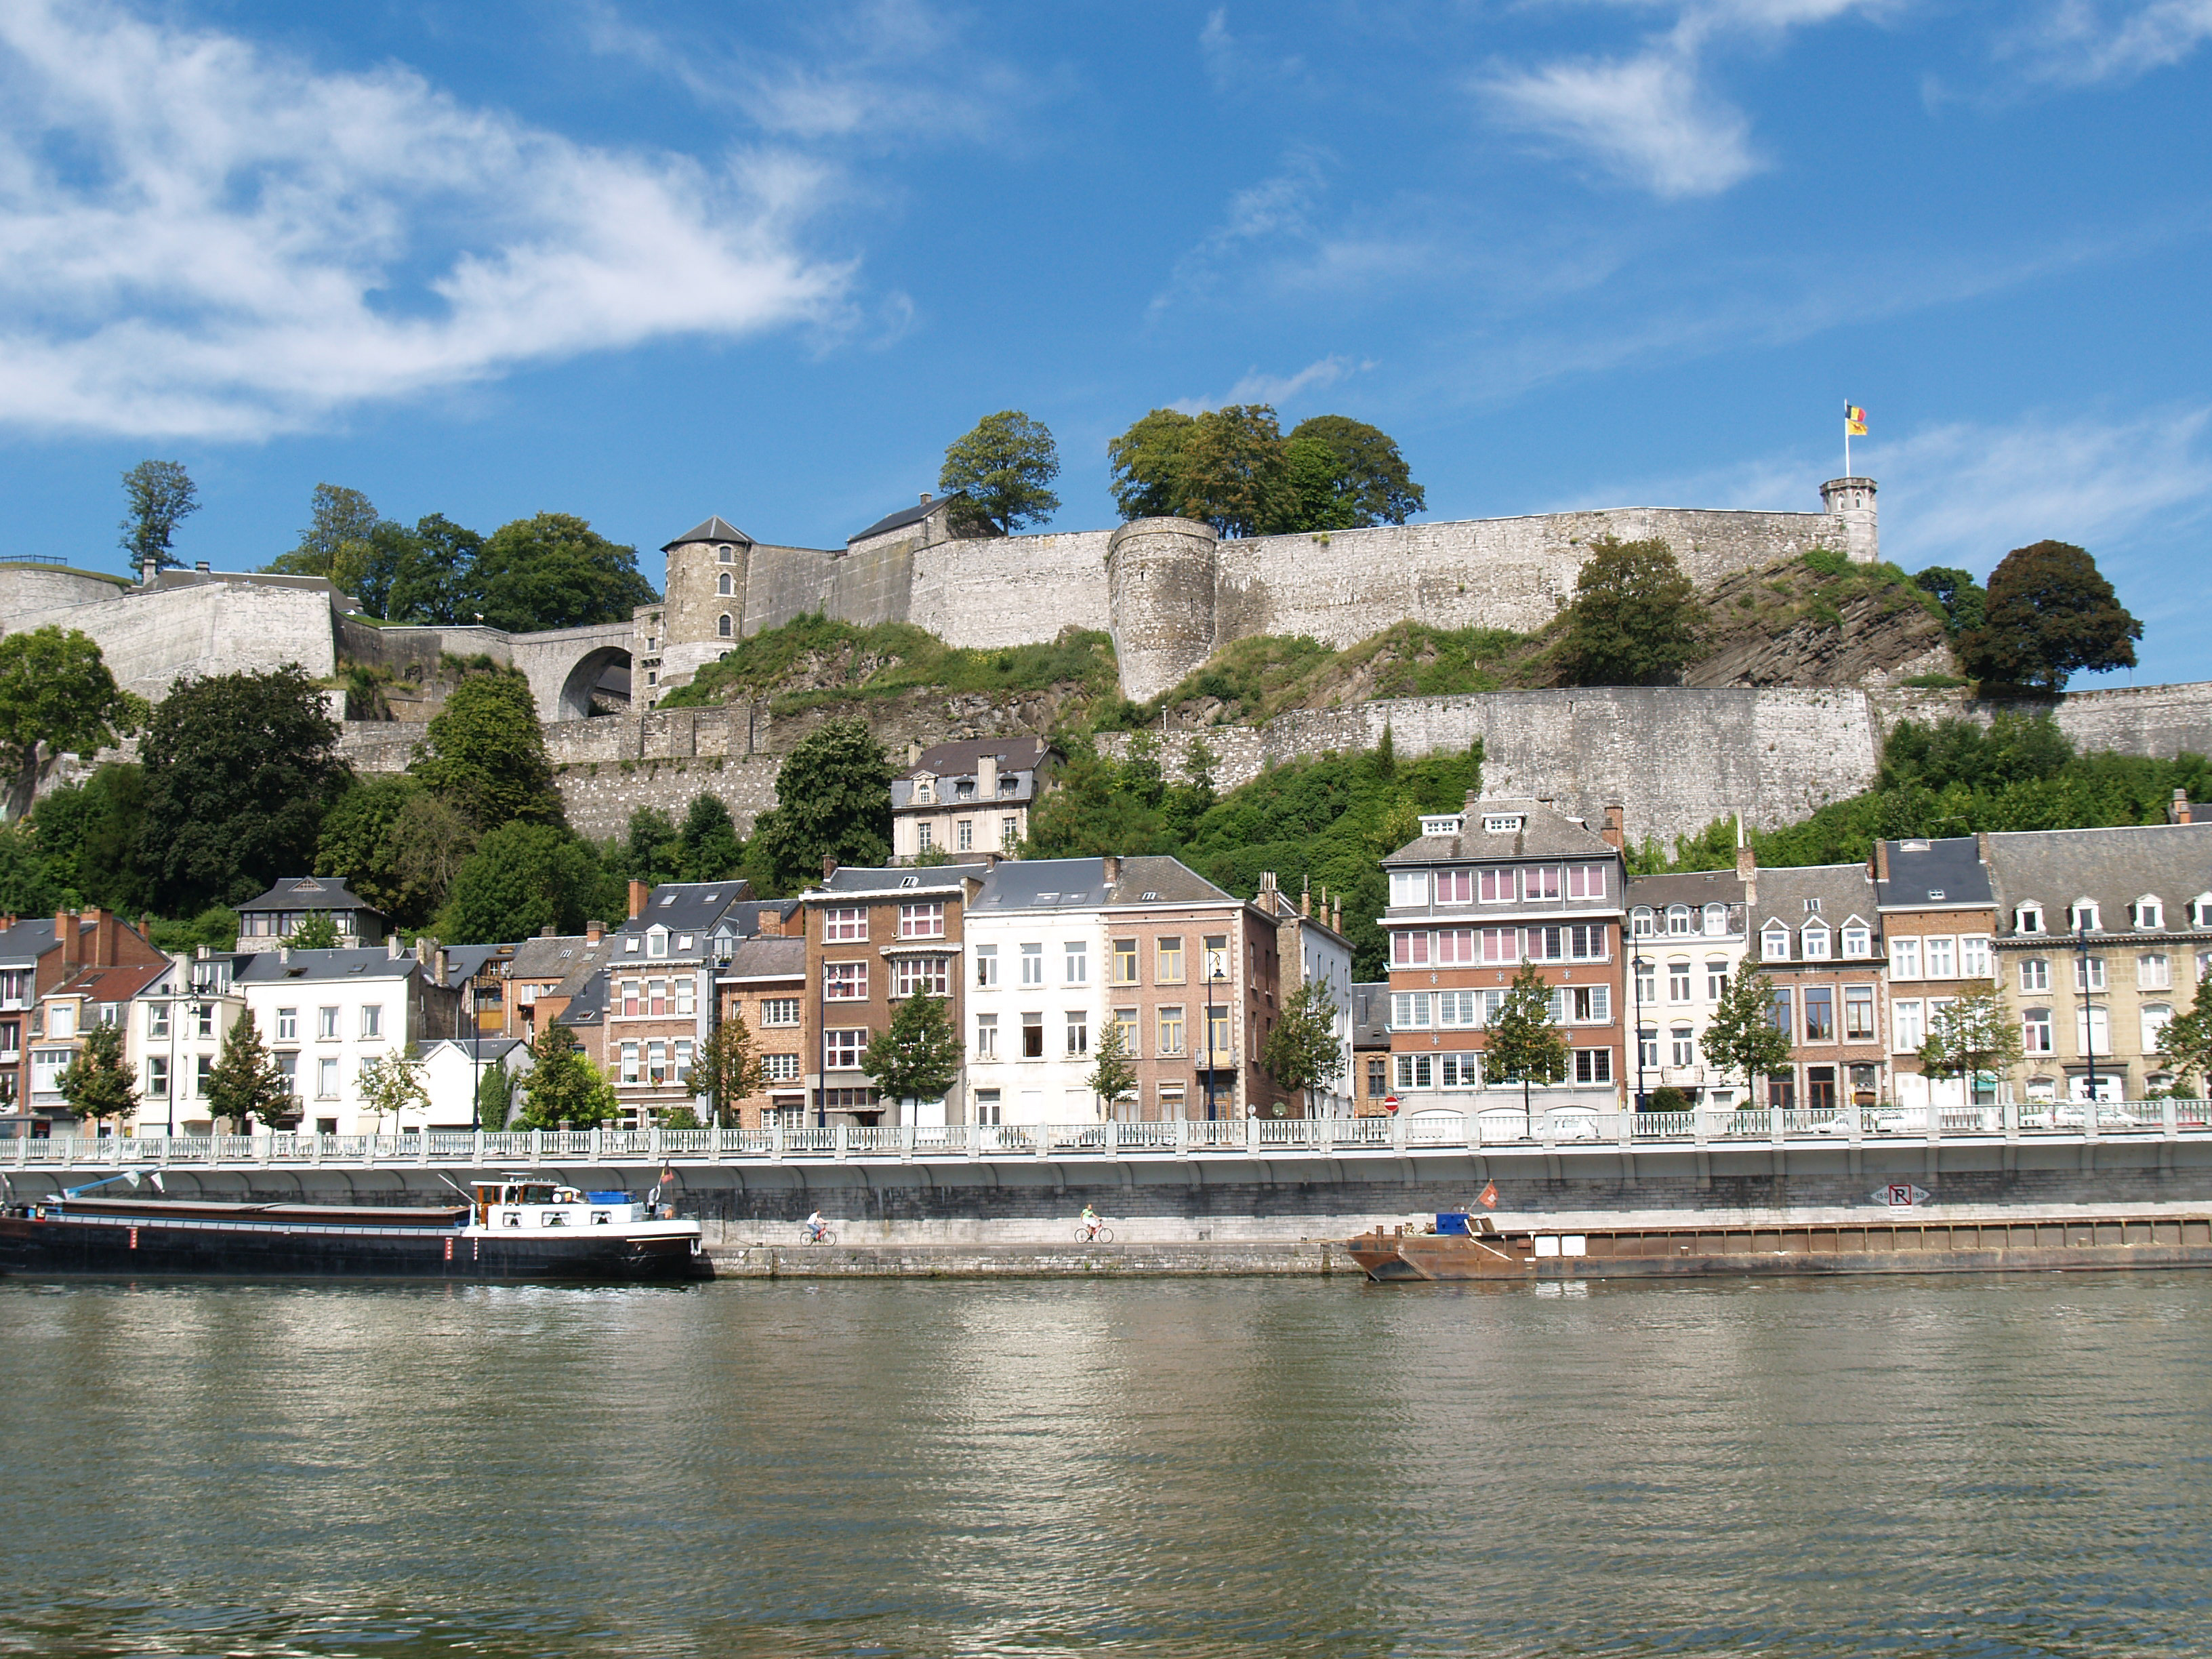 Vue sur la Citadelle de Namur depuis la Meuse